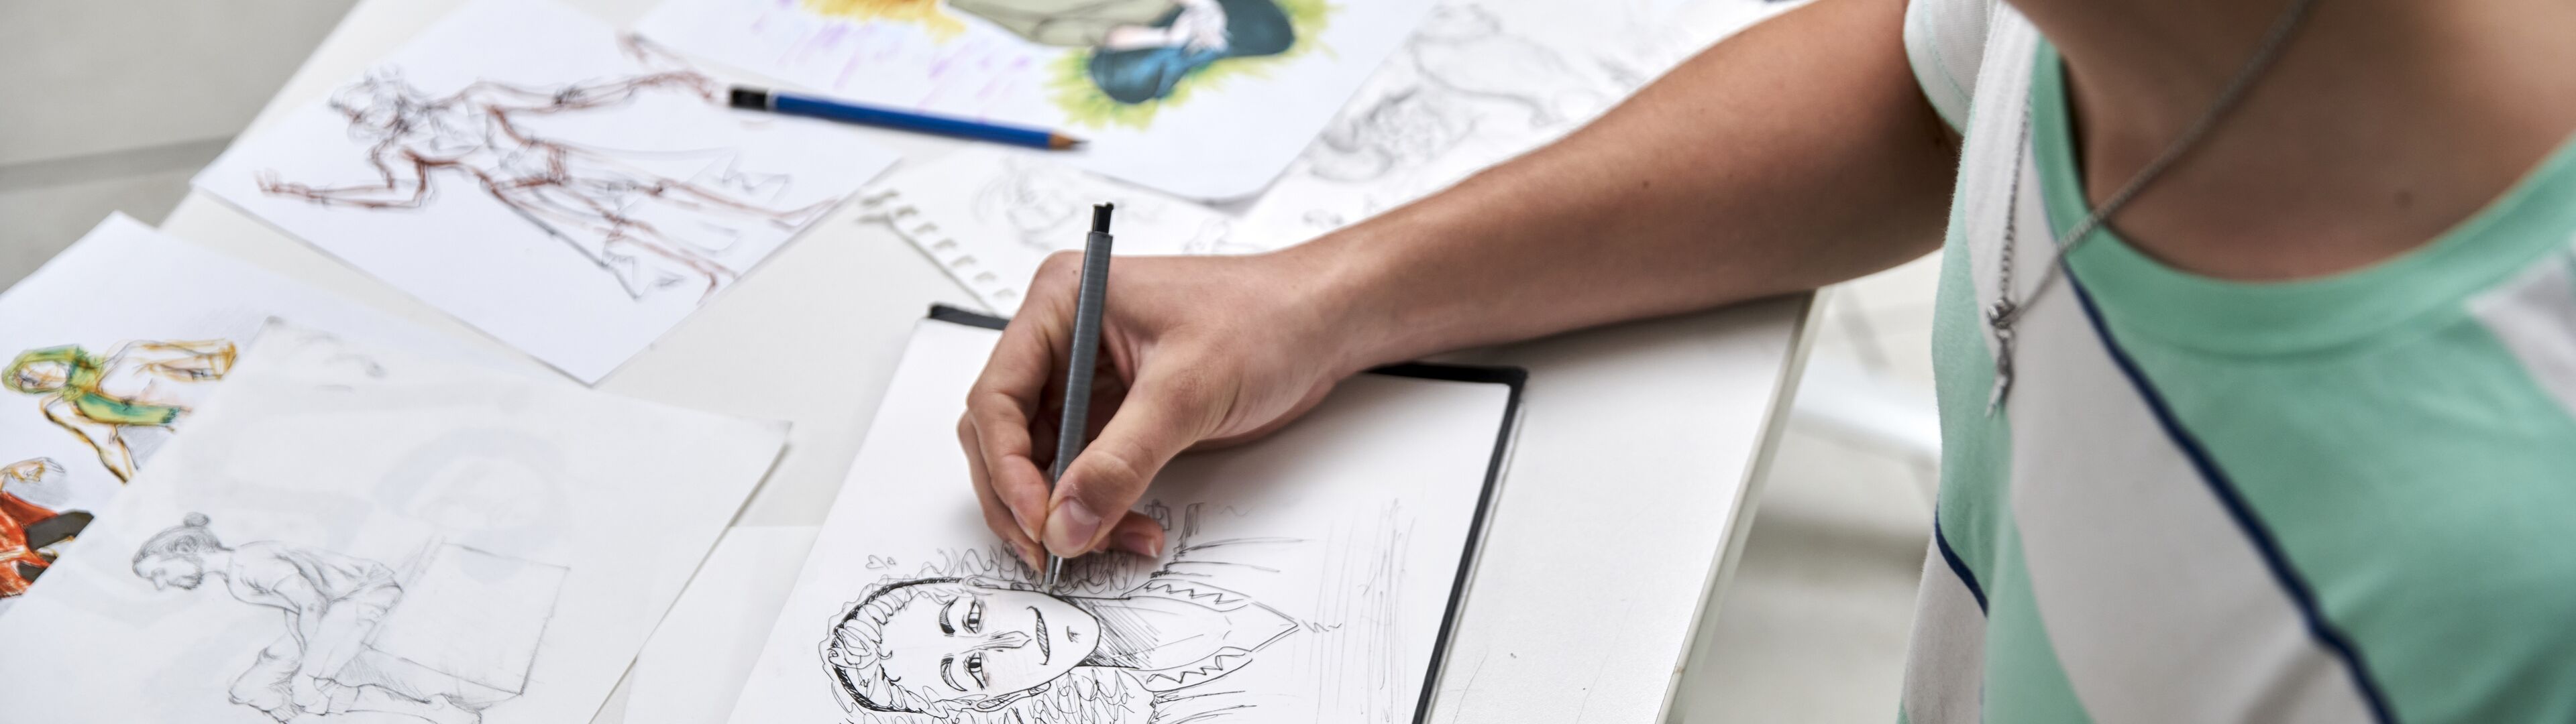 Una persona concentrada dibujando un retrato detallado entre varios bocetos en un escritorio.